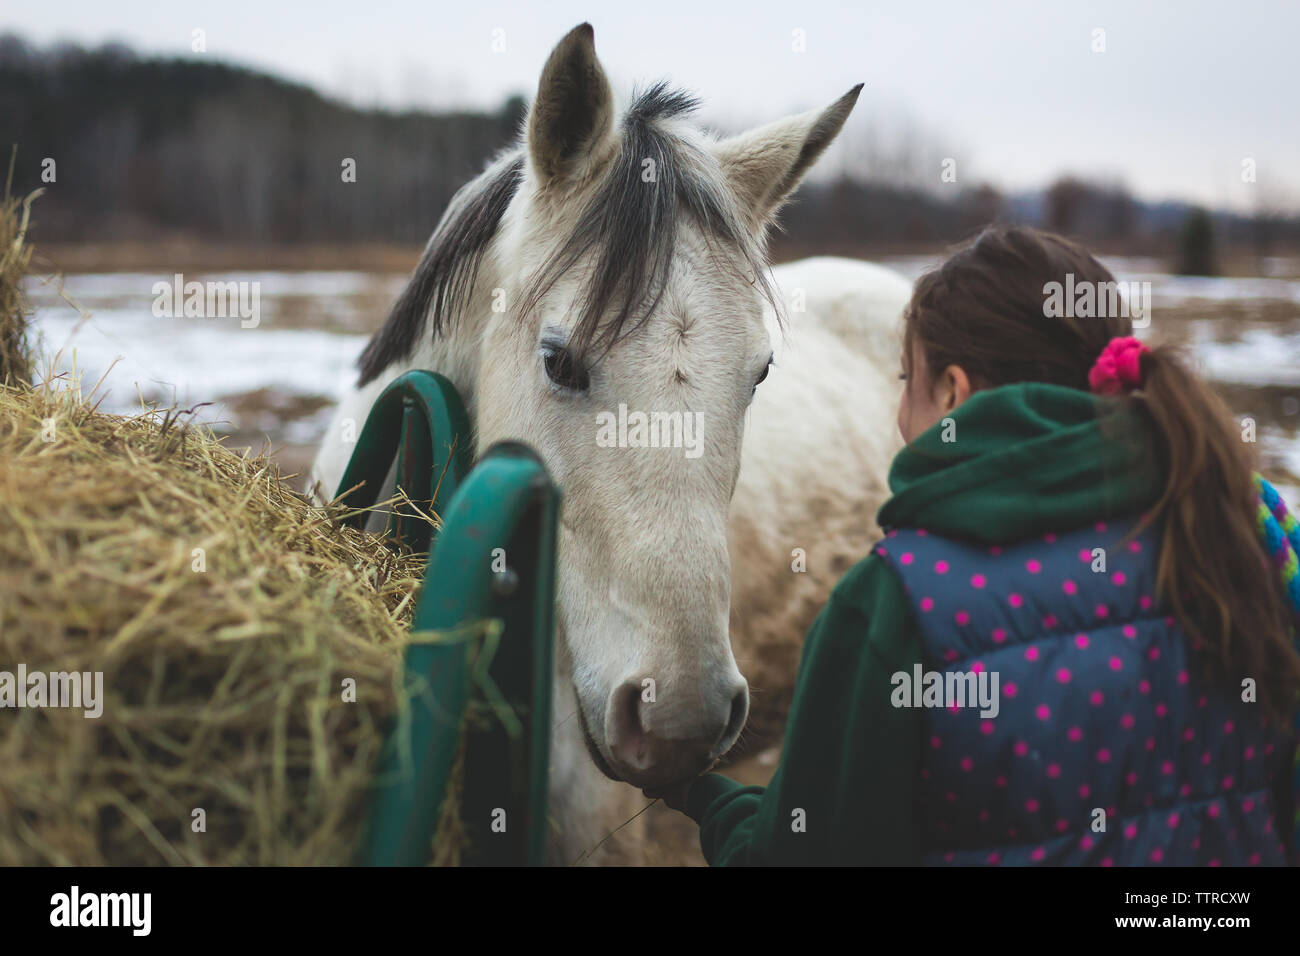 Les filles l'odeur du cheval blanc près de la main d'alimentation cheval Banque D'Images